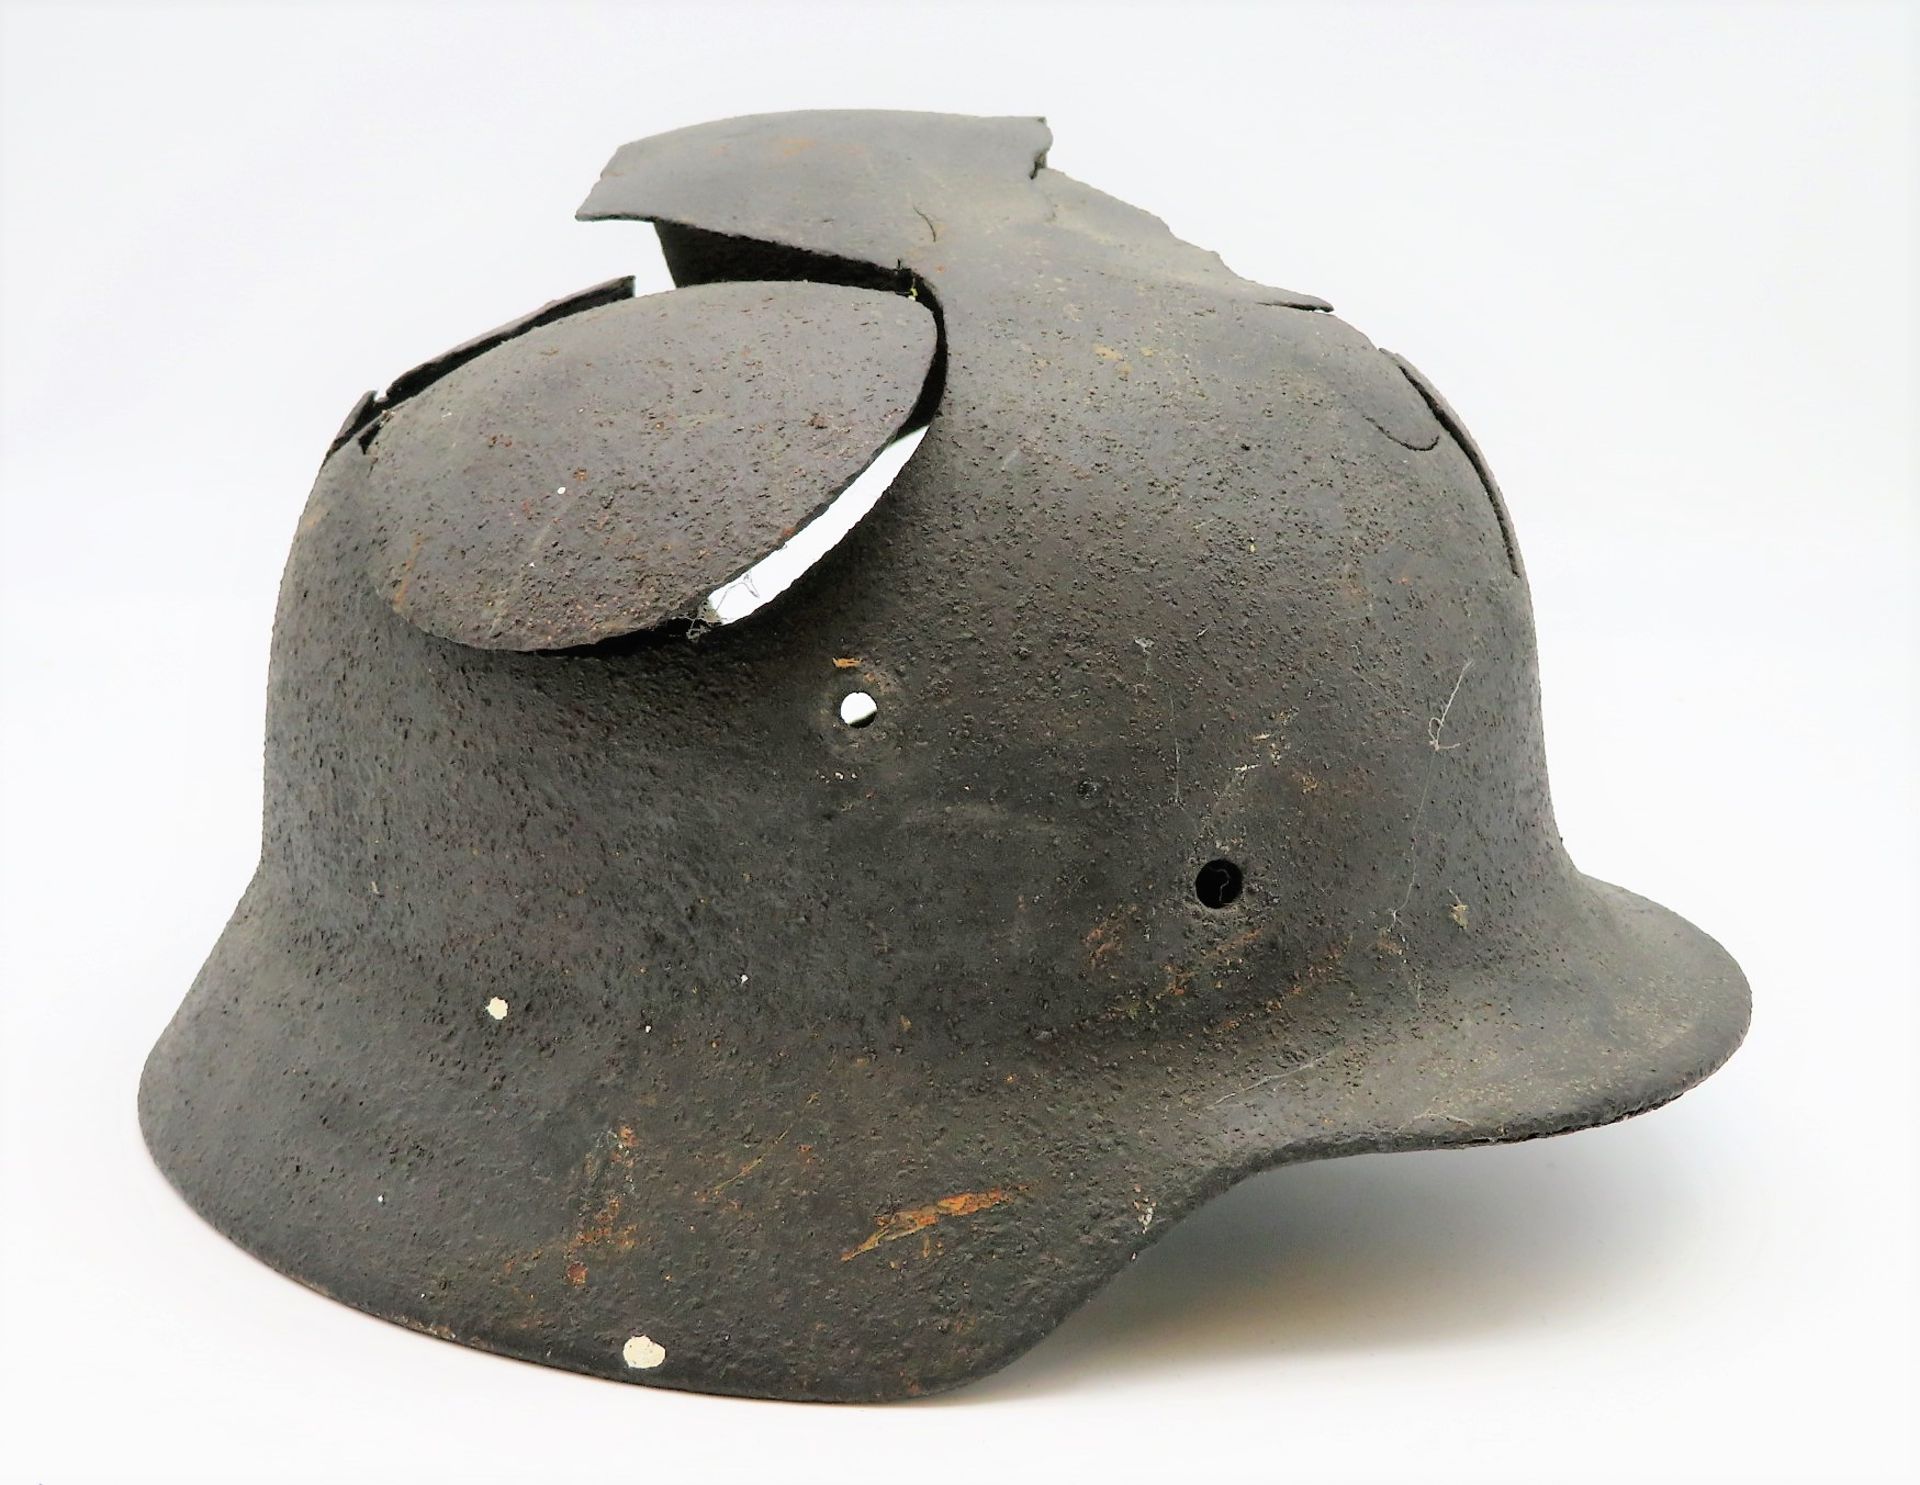 Wehrmachtshelm mit Granateinschlag, 2. Weltkrieg, 18 x 29 x 24 cm. - Bild 2 aus 2